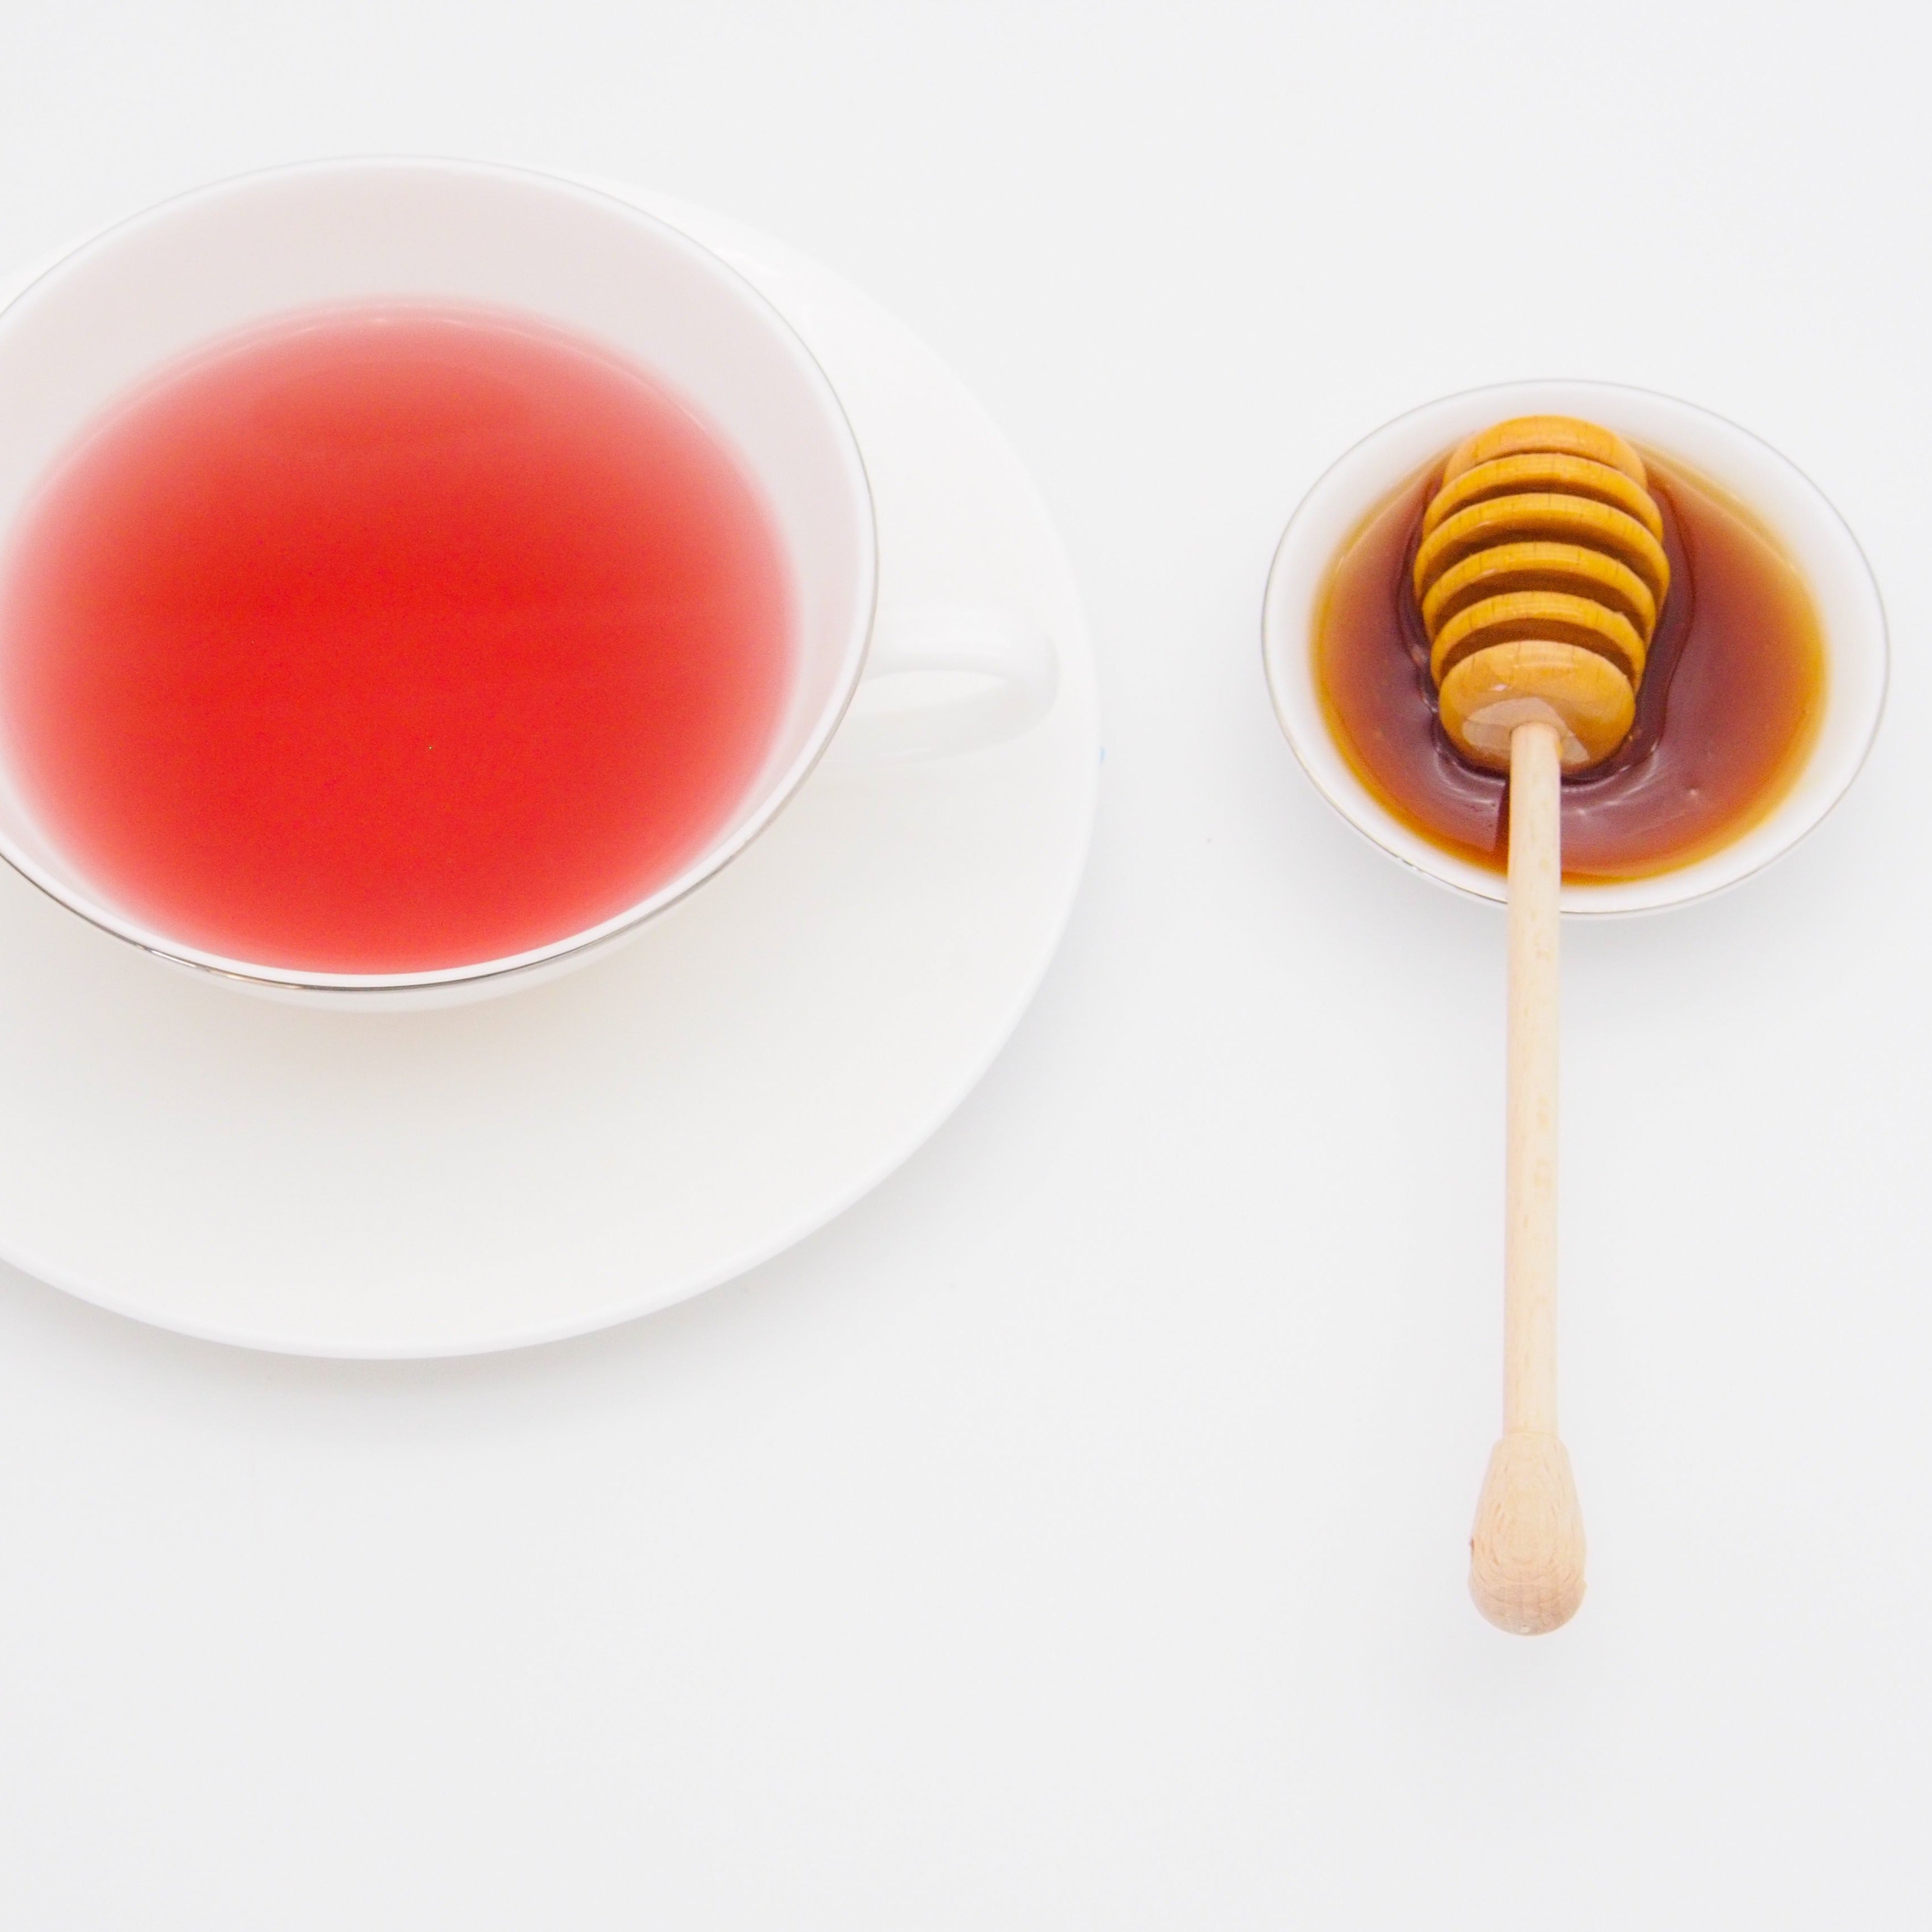 一杯のお茶と蜂蜜。